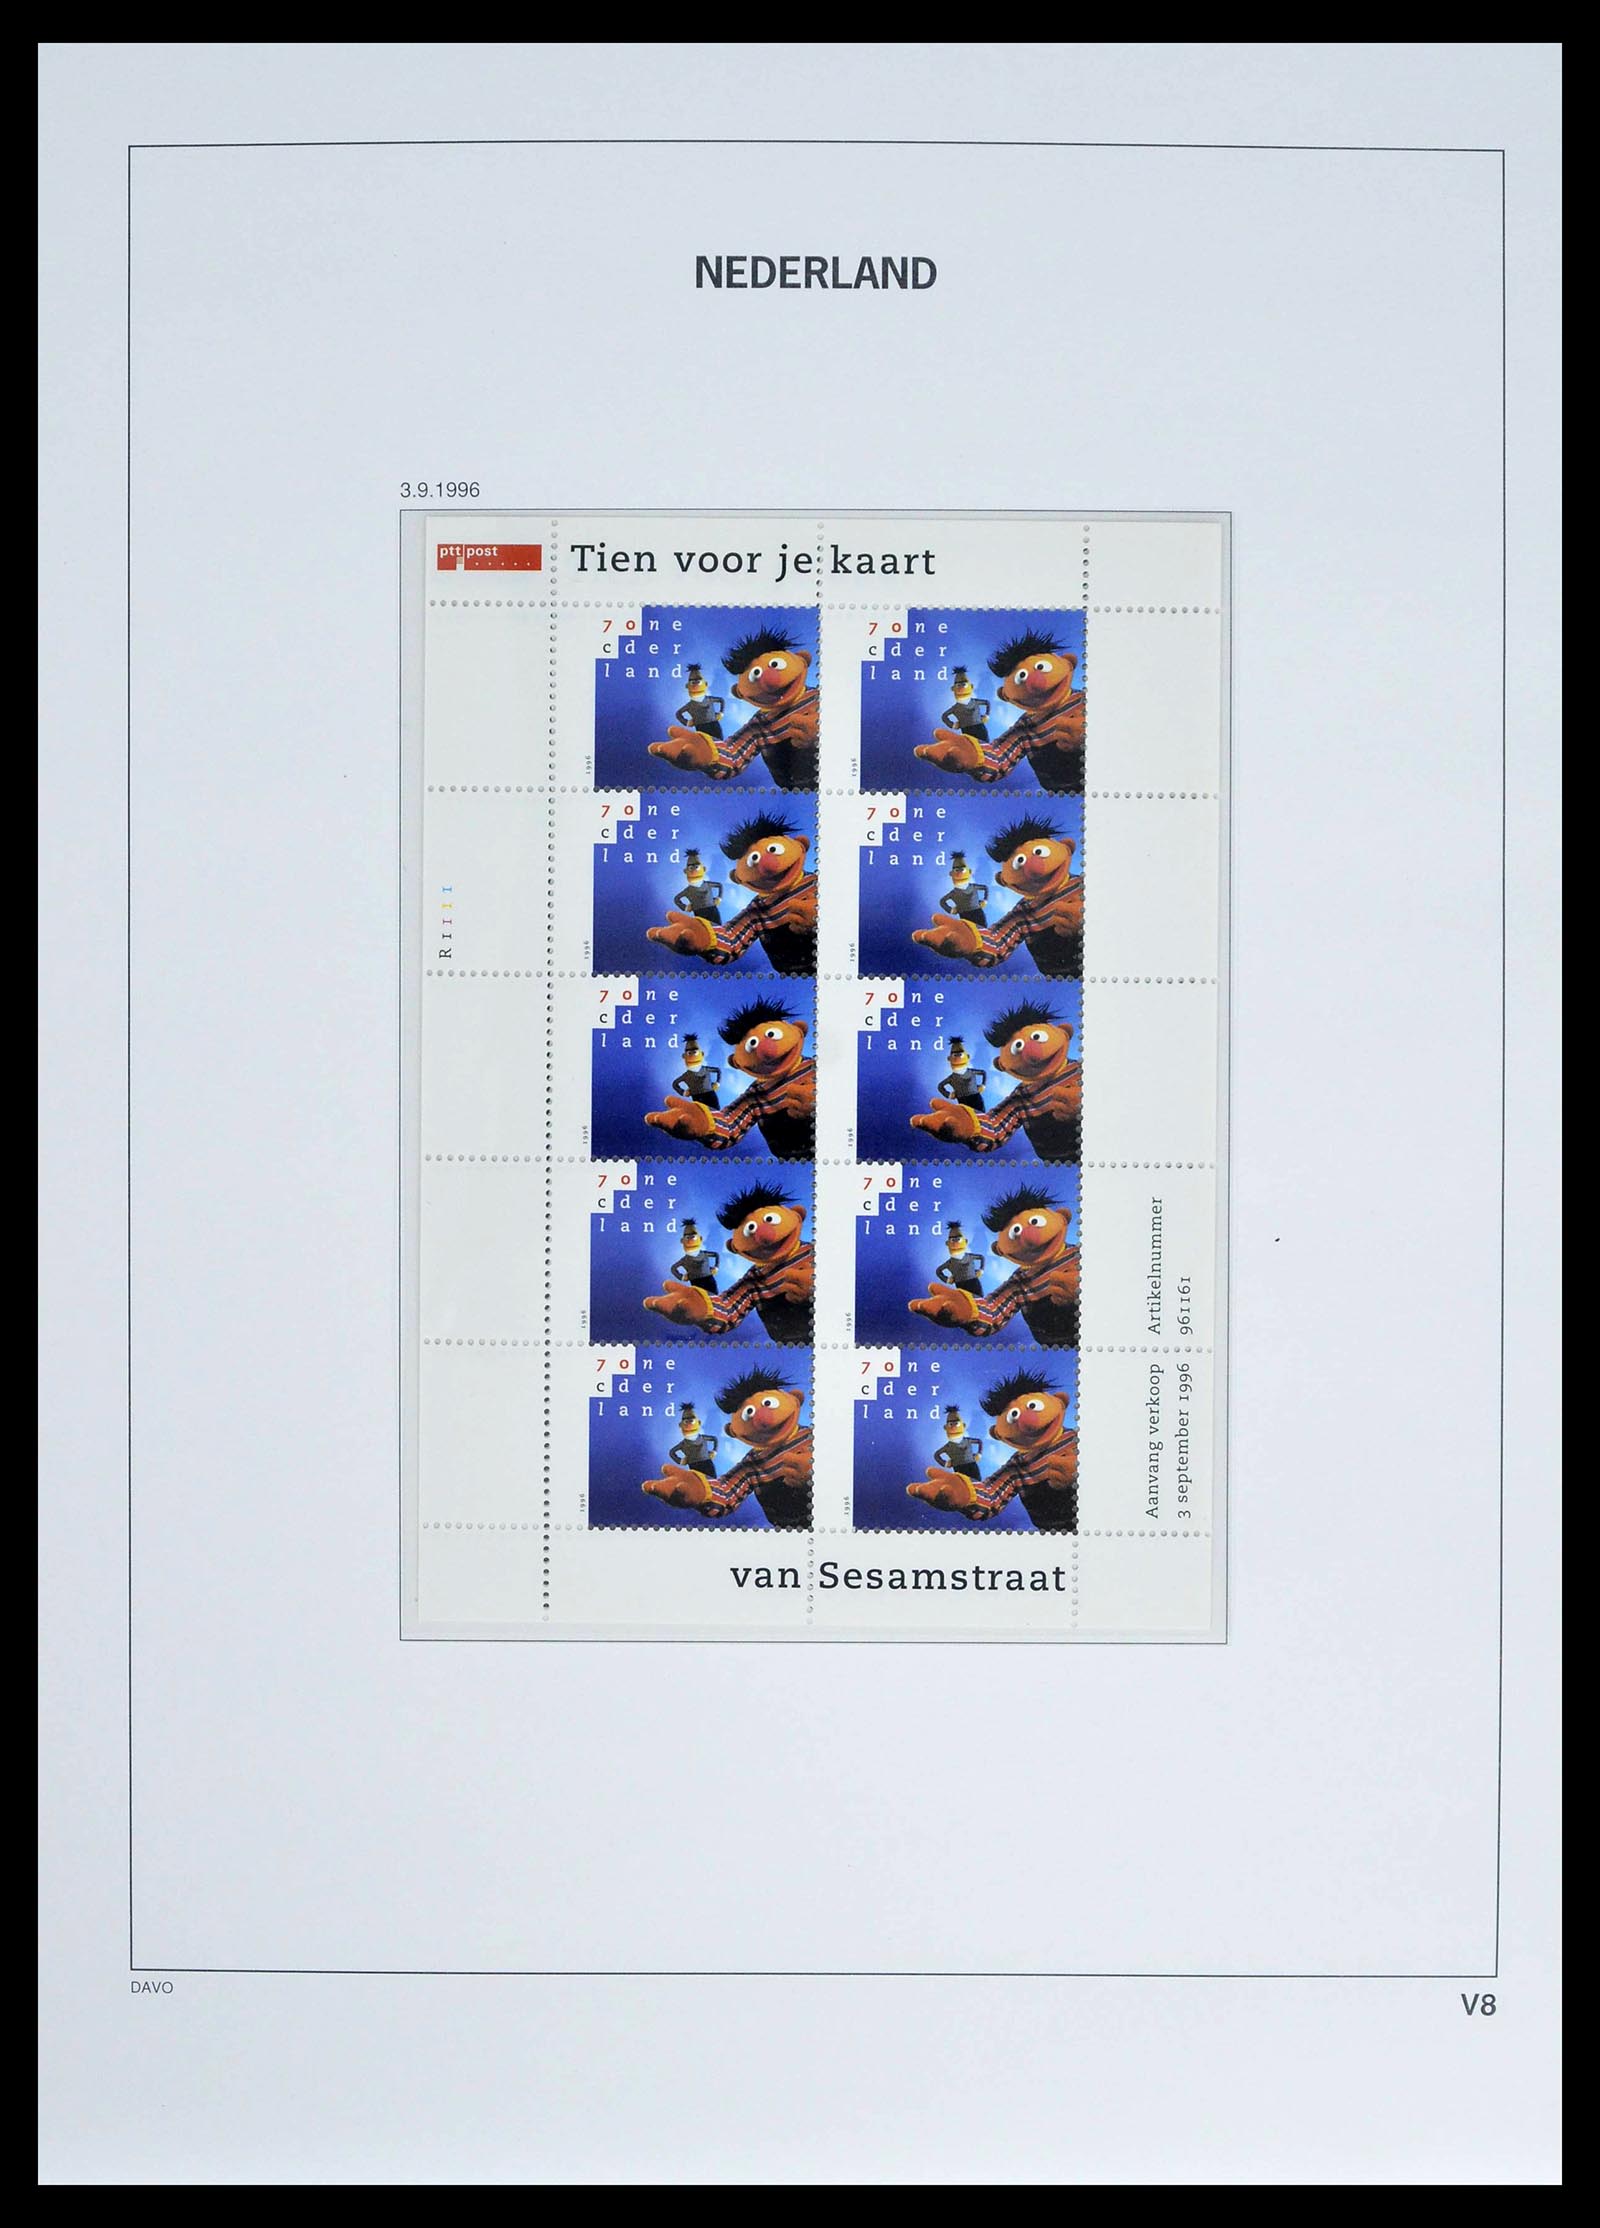 39134 0016 - Stamp collection 39134 Netherlands sheetlets 1992-2019!